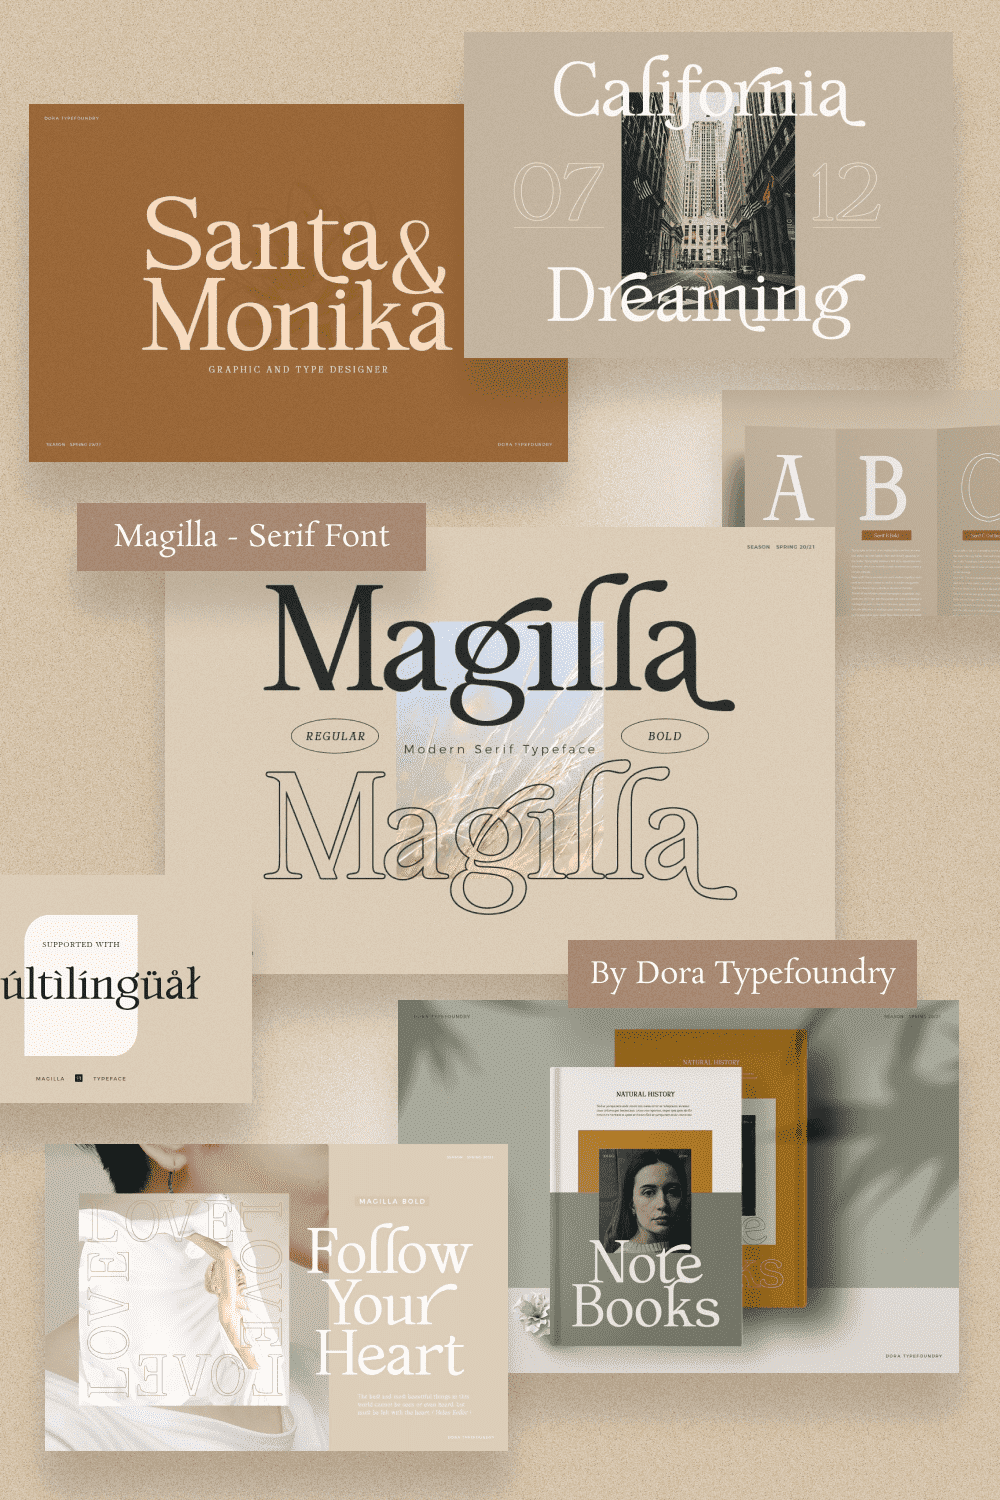 Magilla - Serif Font.